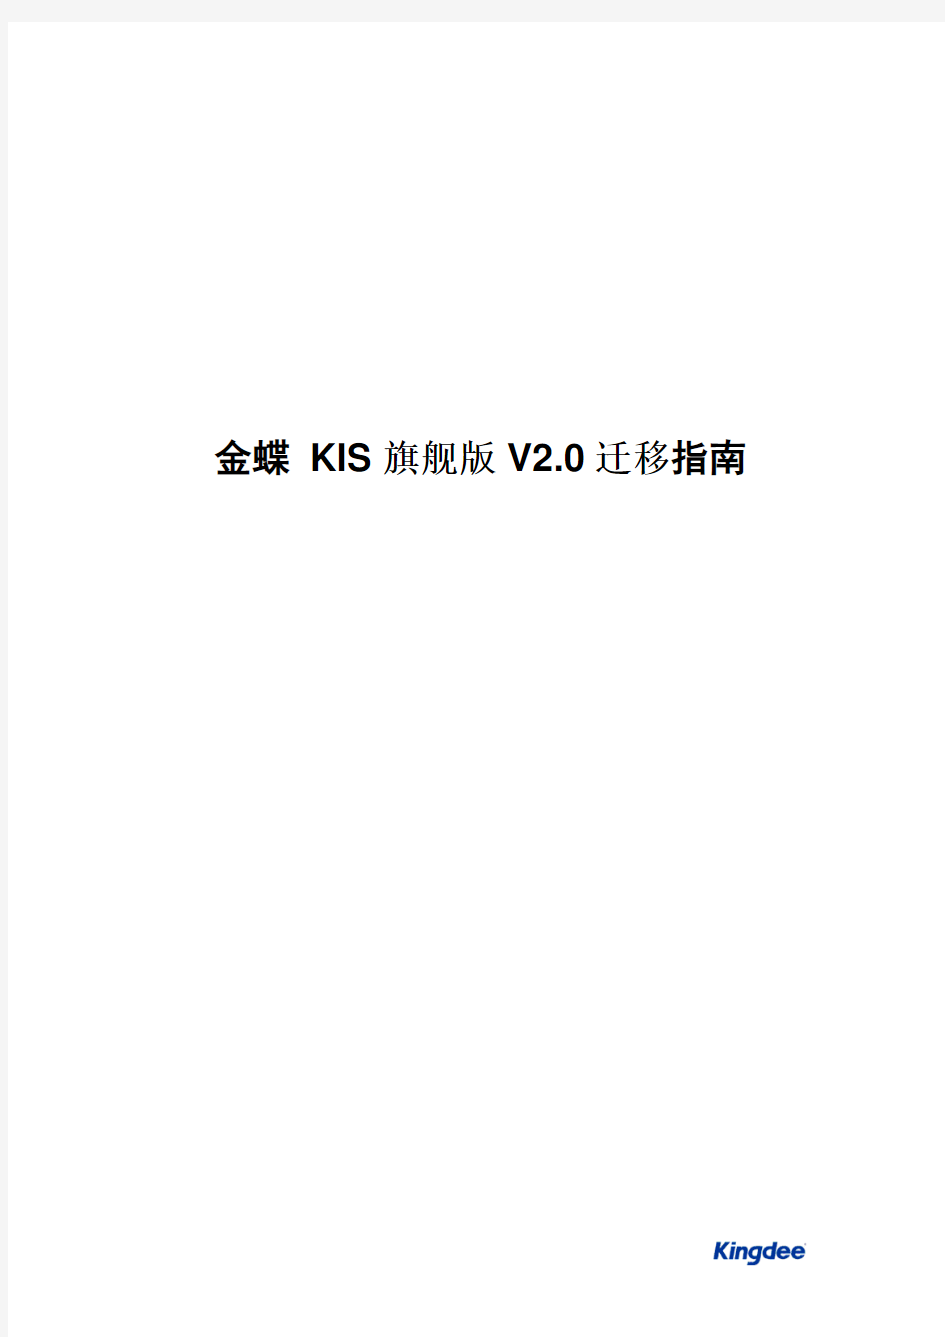 金蝶KIS旗舰版V2.0迁移指南